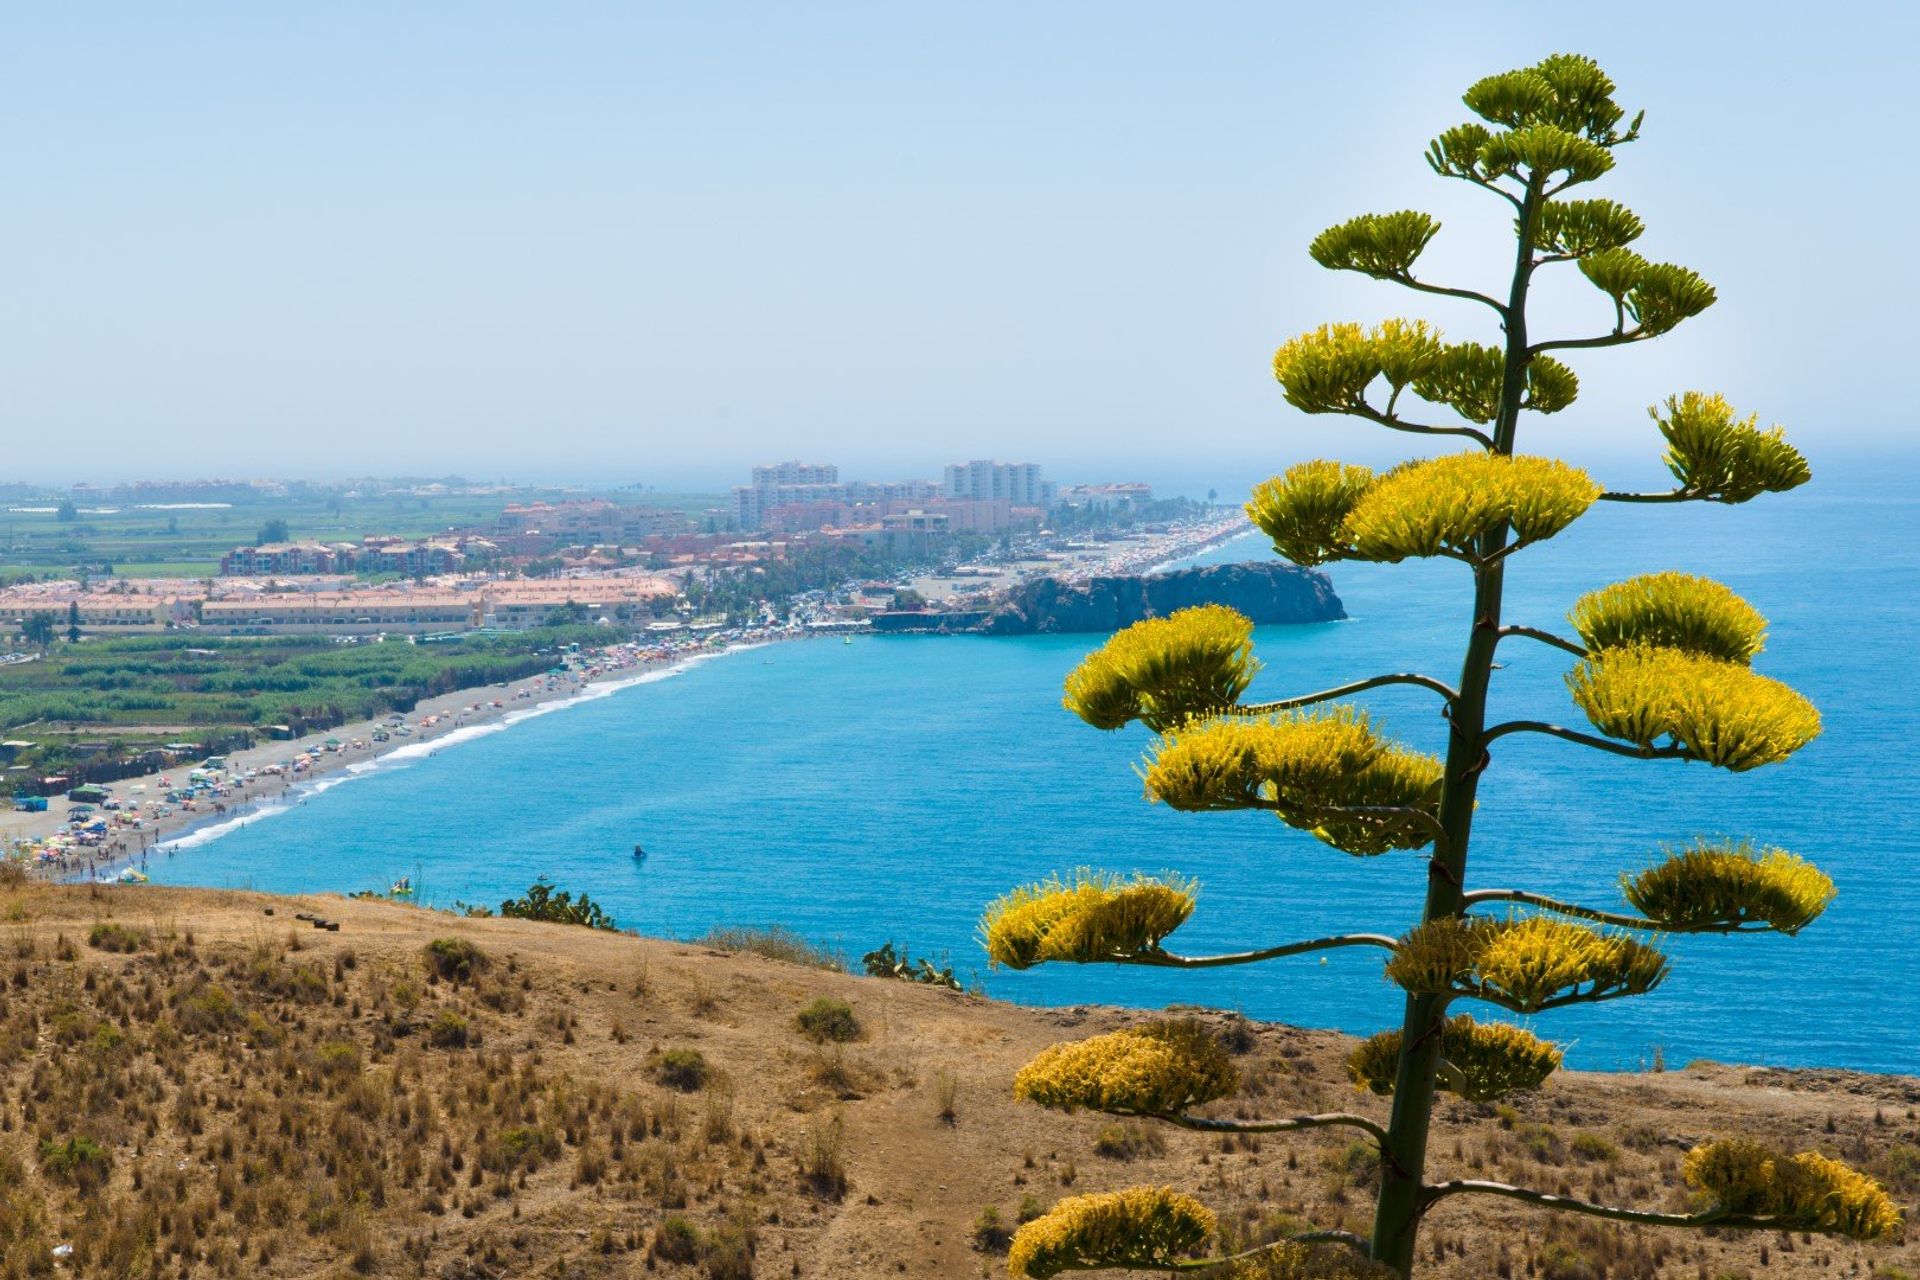 Panoramic view of the 1,850m long beach in Salobrena